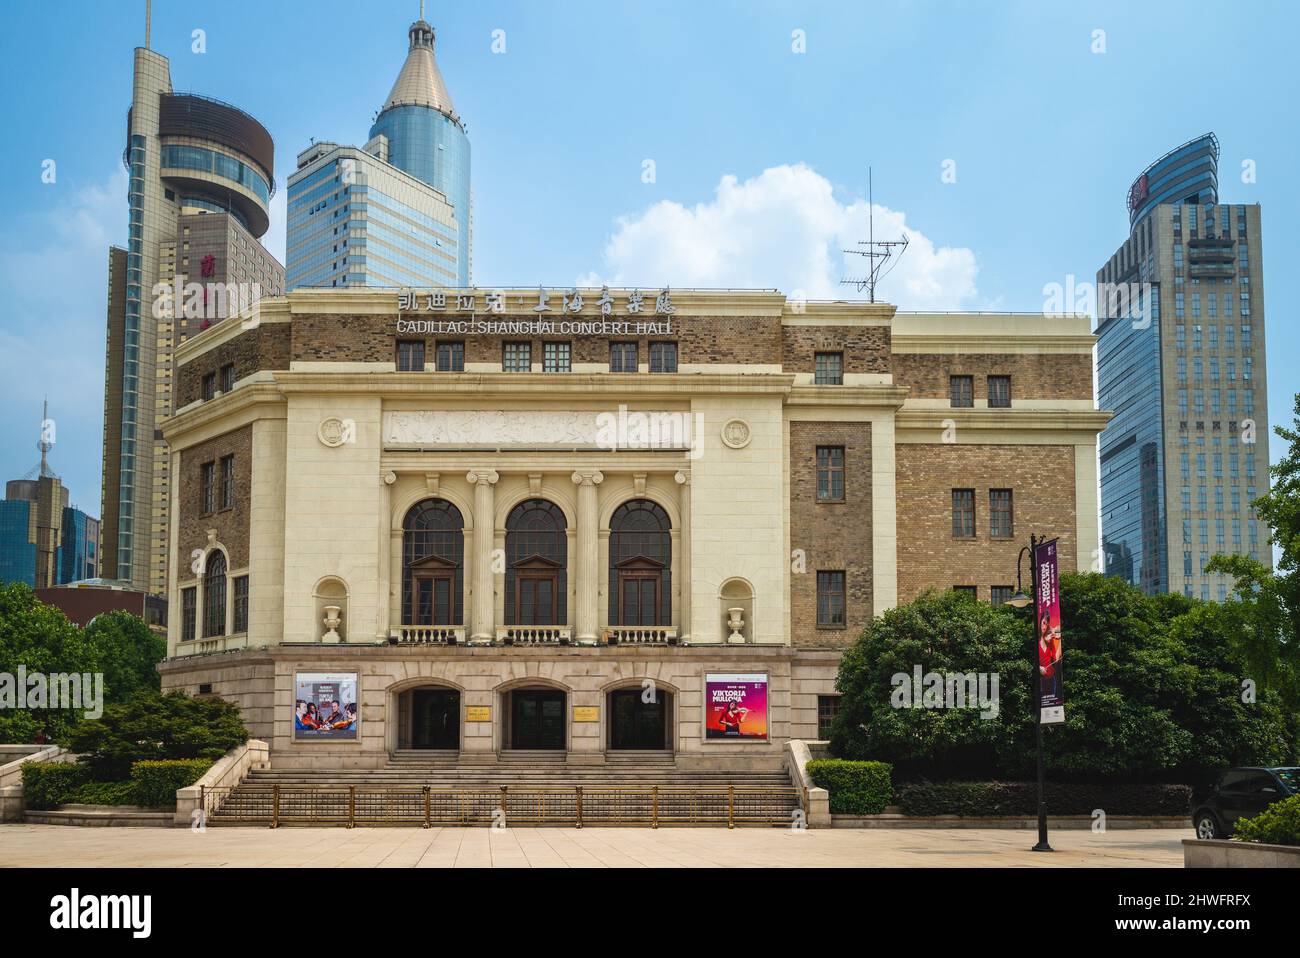 27 luglio 2018: Sala concerti Cadillac Shanghai situata nel distretto di Huangpu, Shanghai, Cina, fondata nel 1930 come Nanjing Drama Hall, rinominata Pechino in Foto Stock